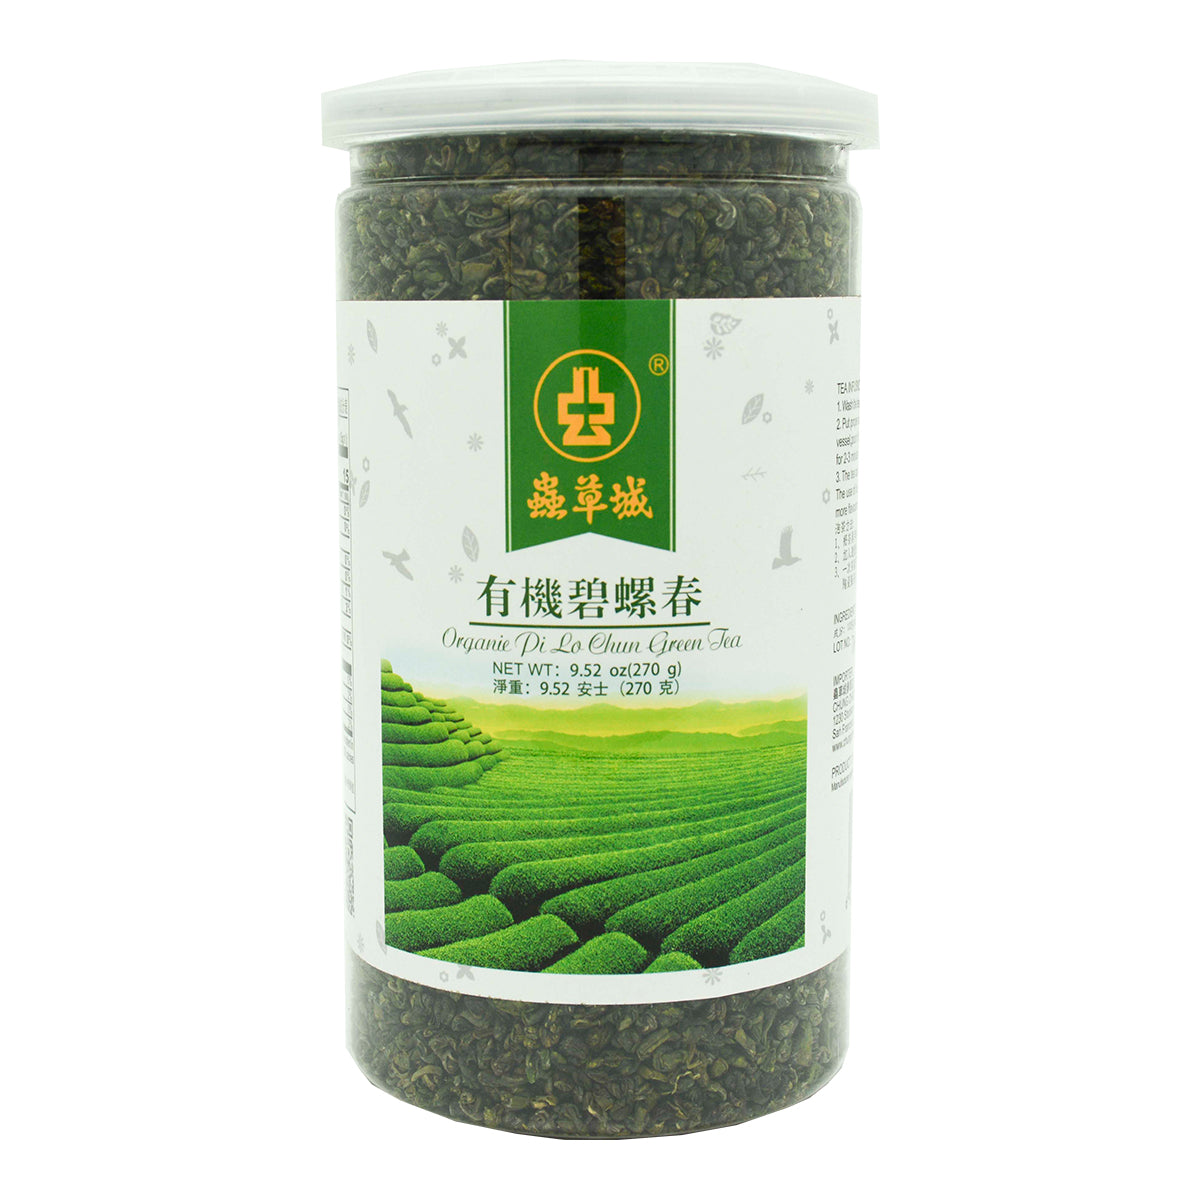 Organic Pi Lo Chun Tea 270g